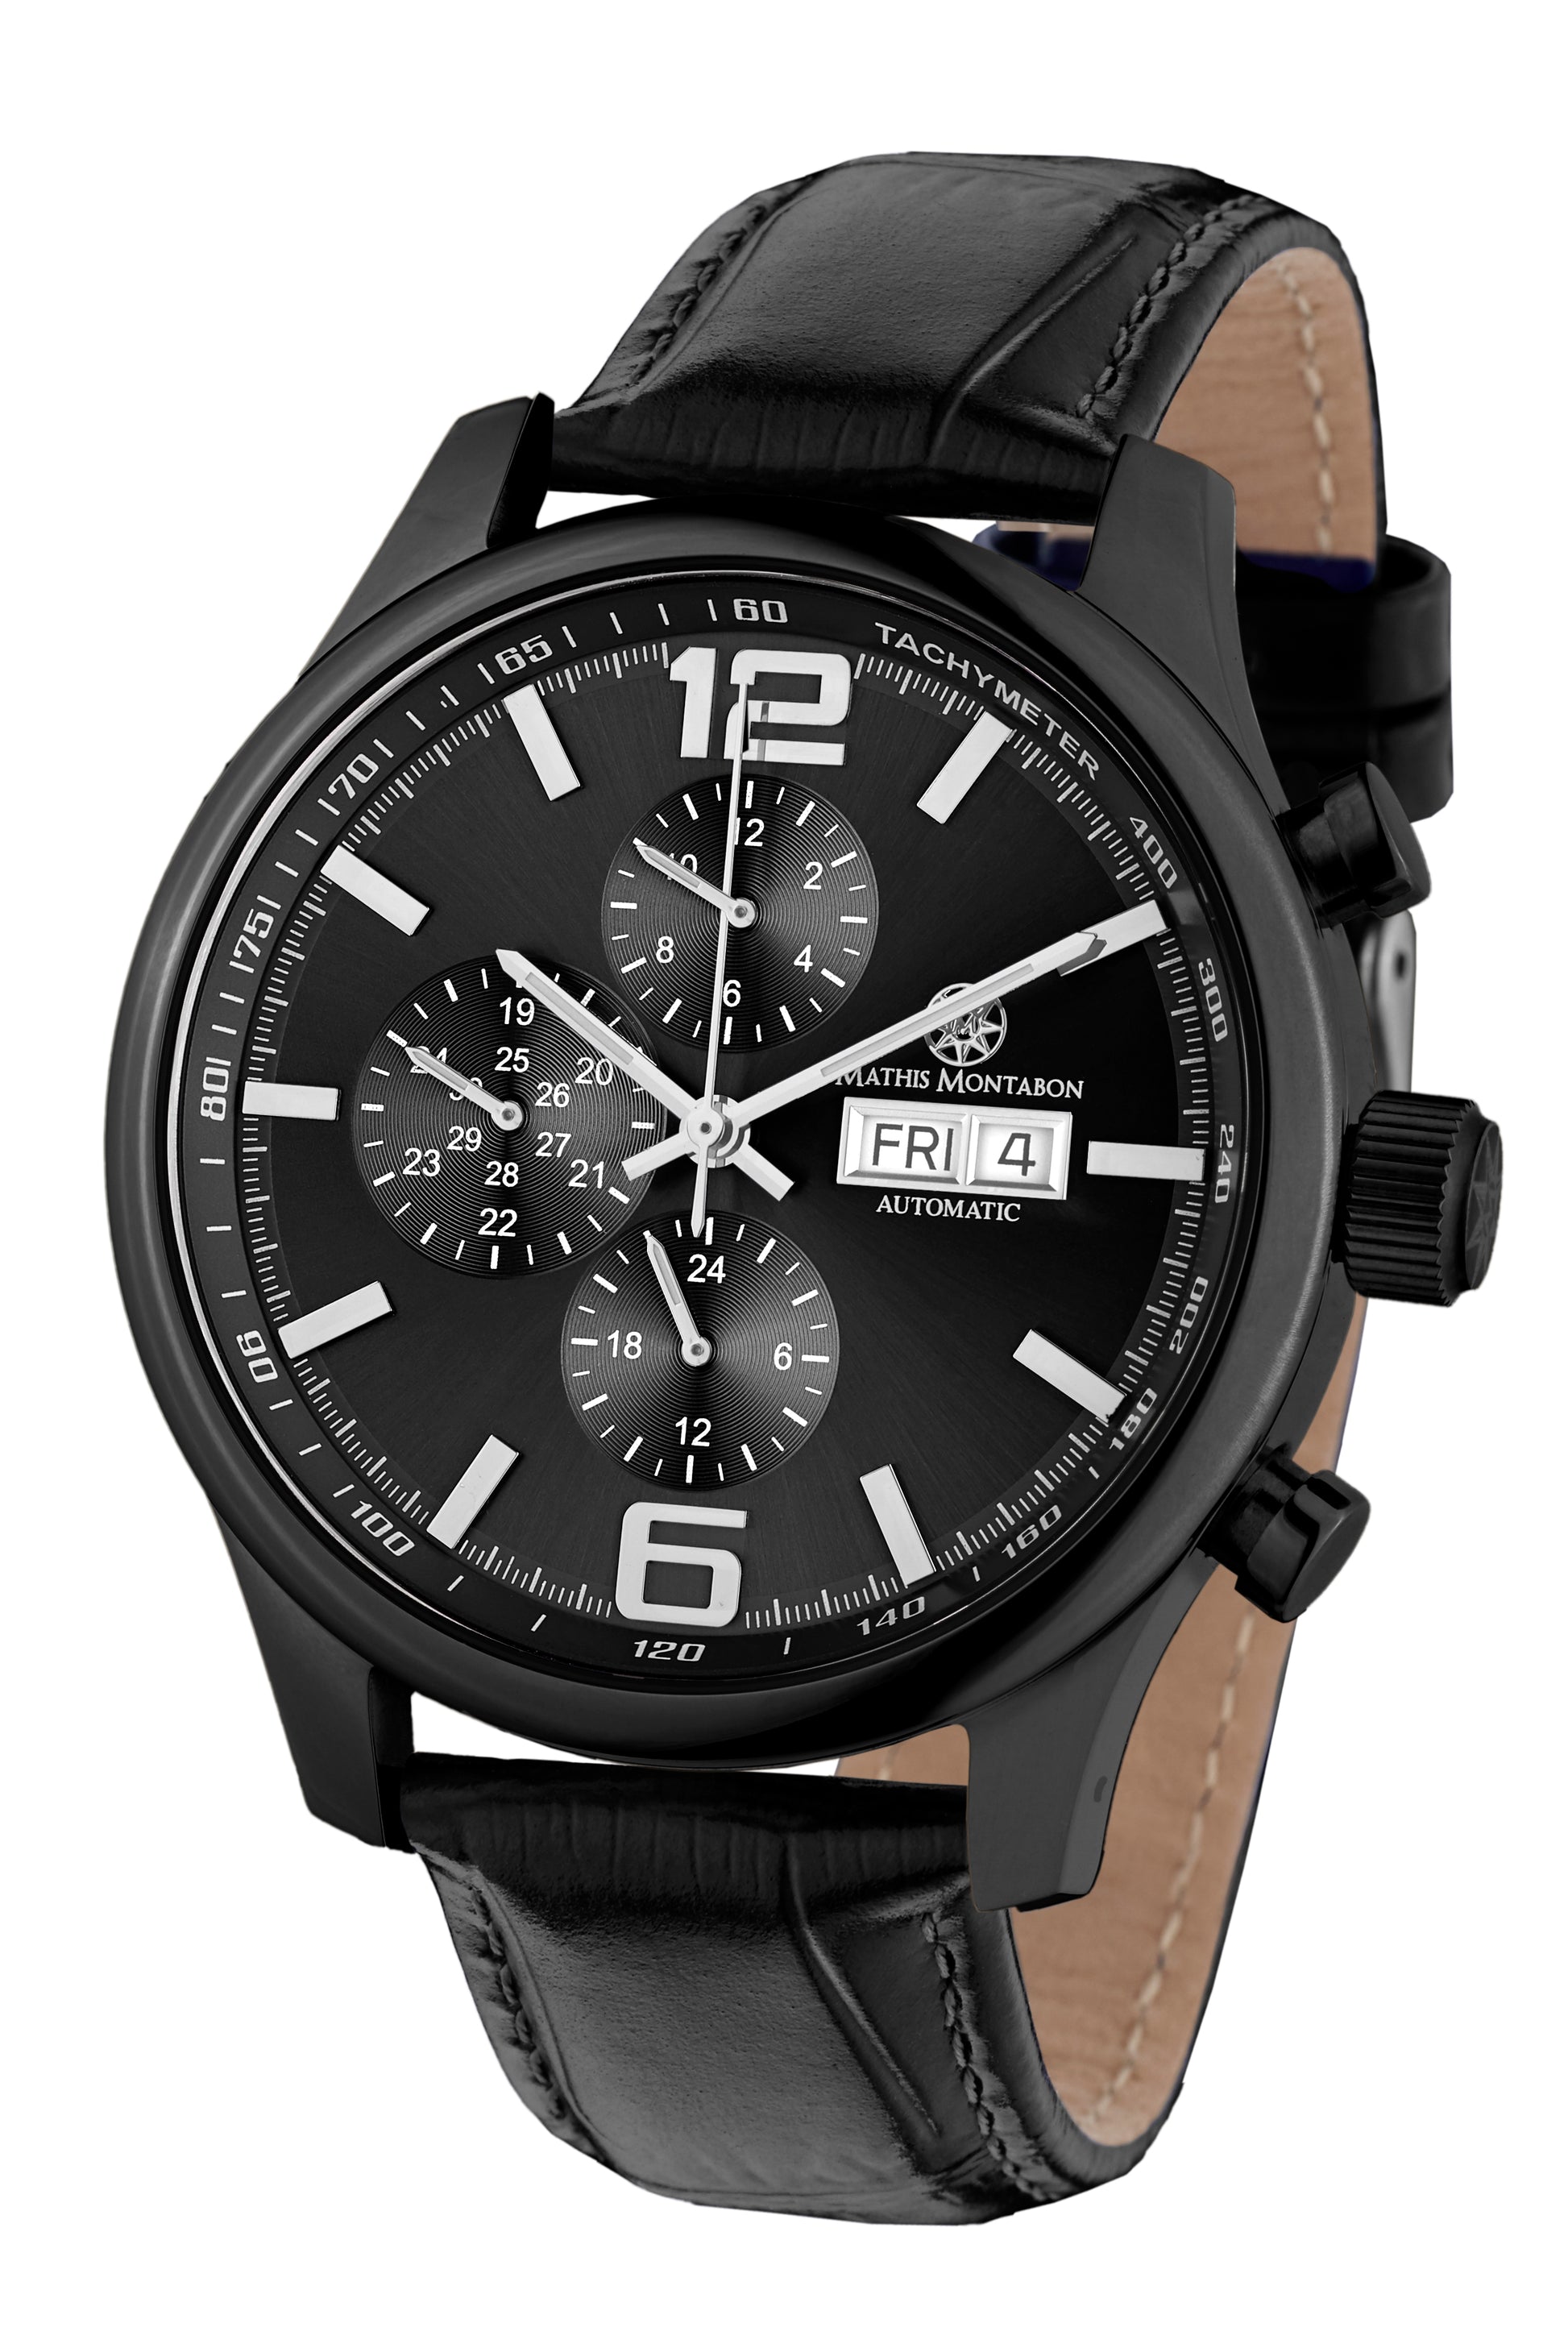 Automatic watches — Grande Date II — Mathis Montabon — IP schwarz